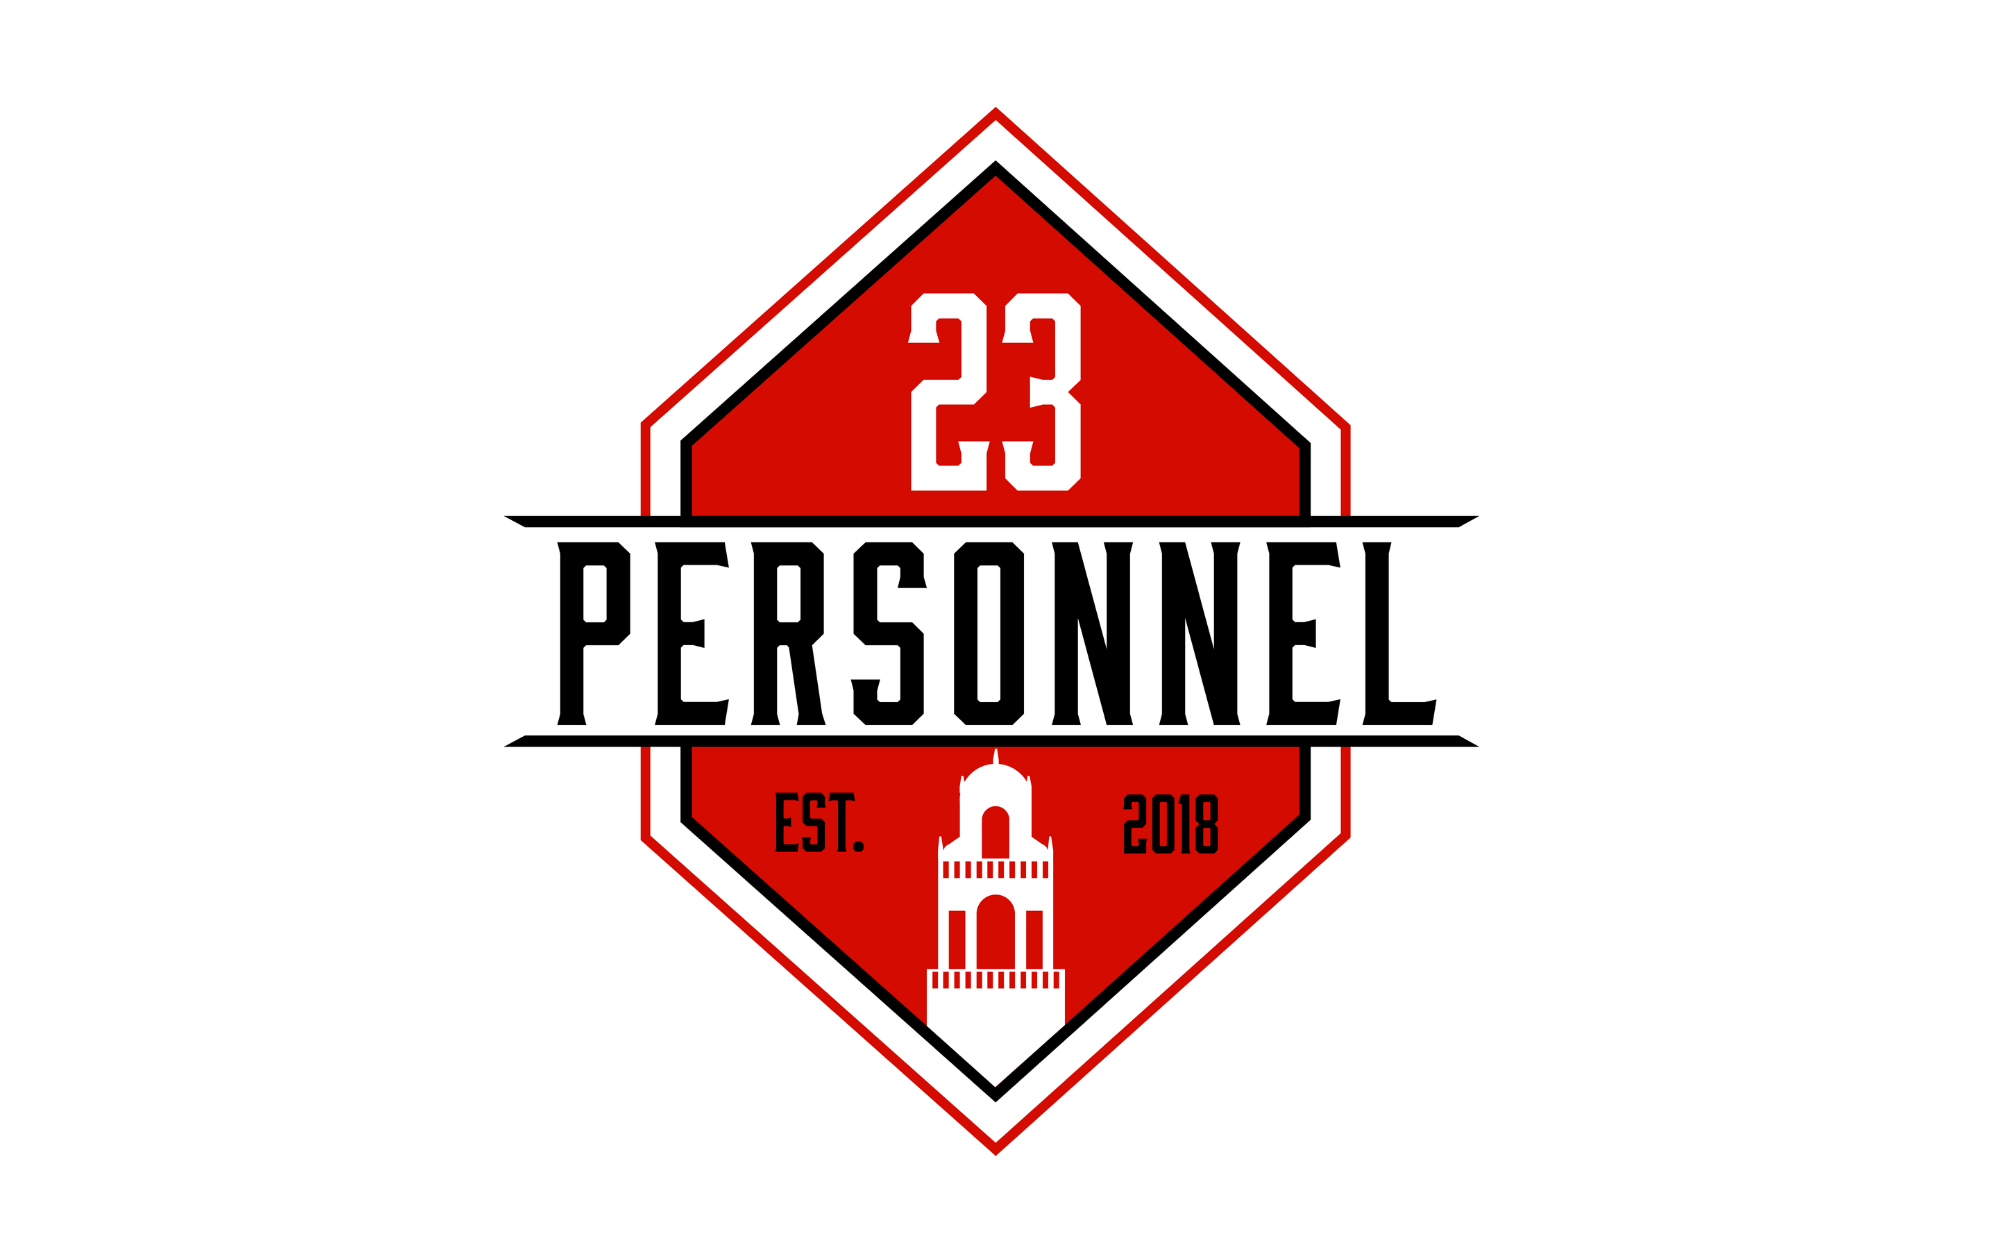 Chris Beard Rumors & Baseball Back in Top 5  |  23 Personnel Podcast – 197